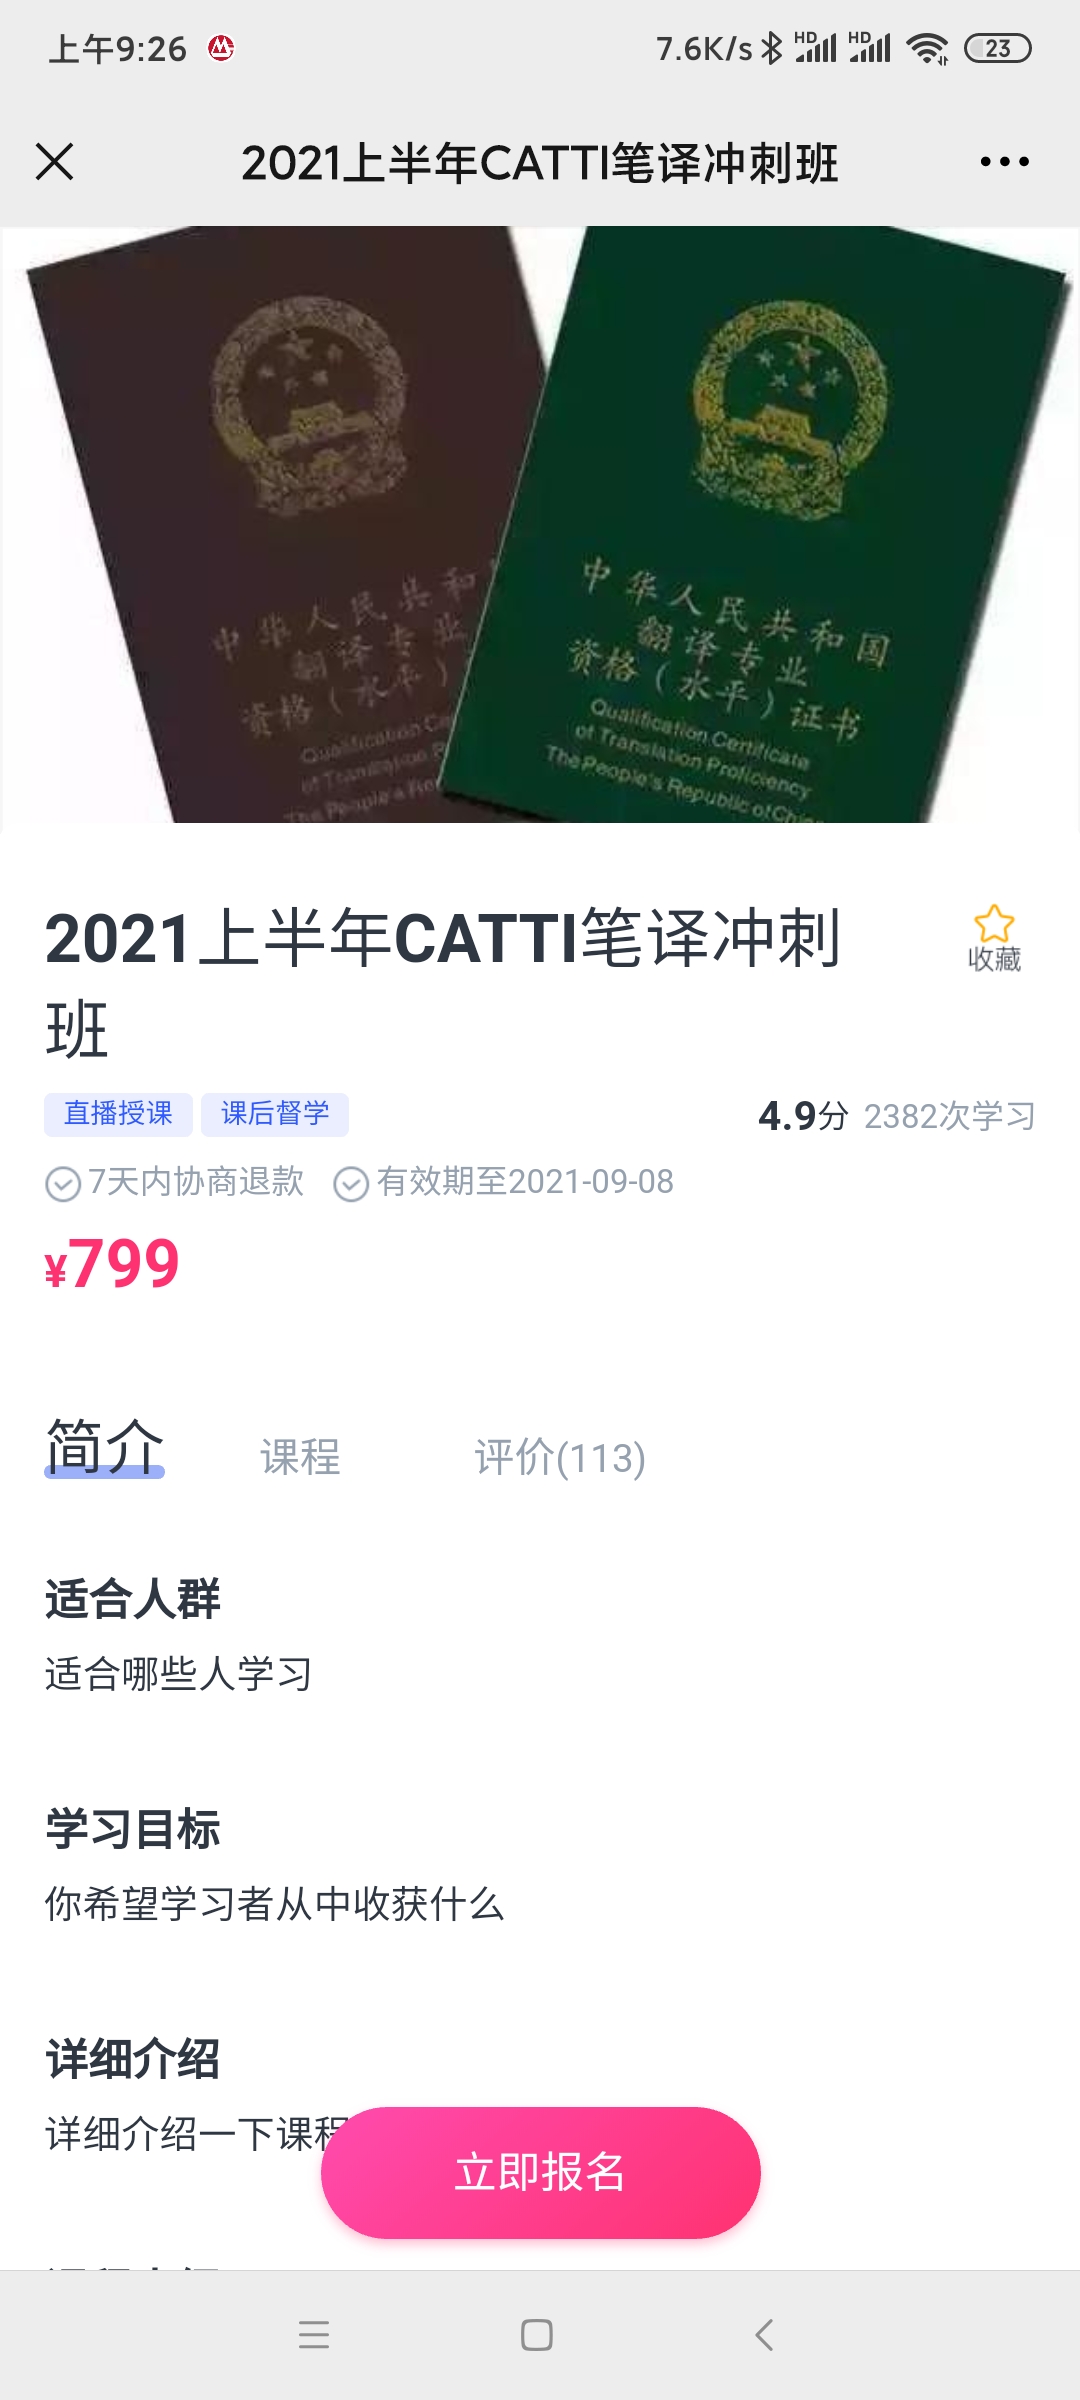 【英语上新】 韩刚2021年6月CATTI二三笔冲刺班(已完结)20